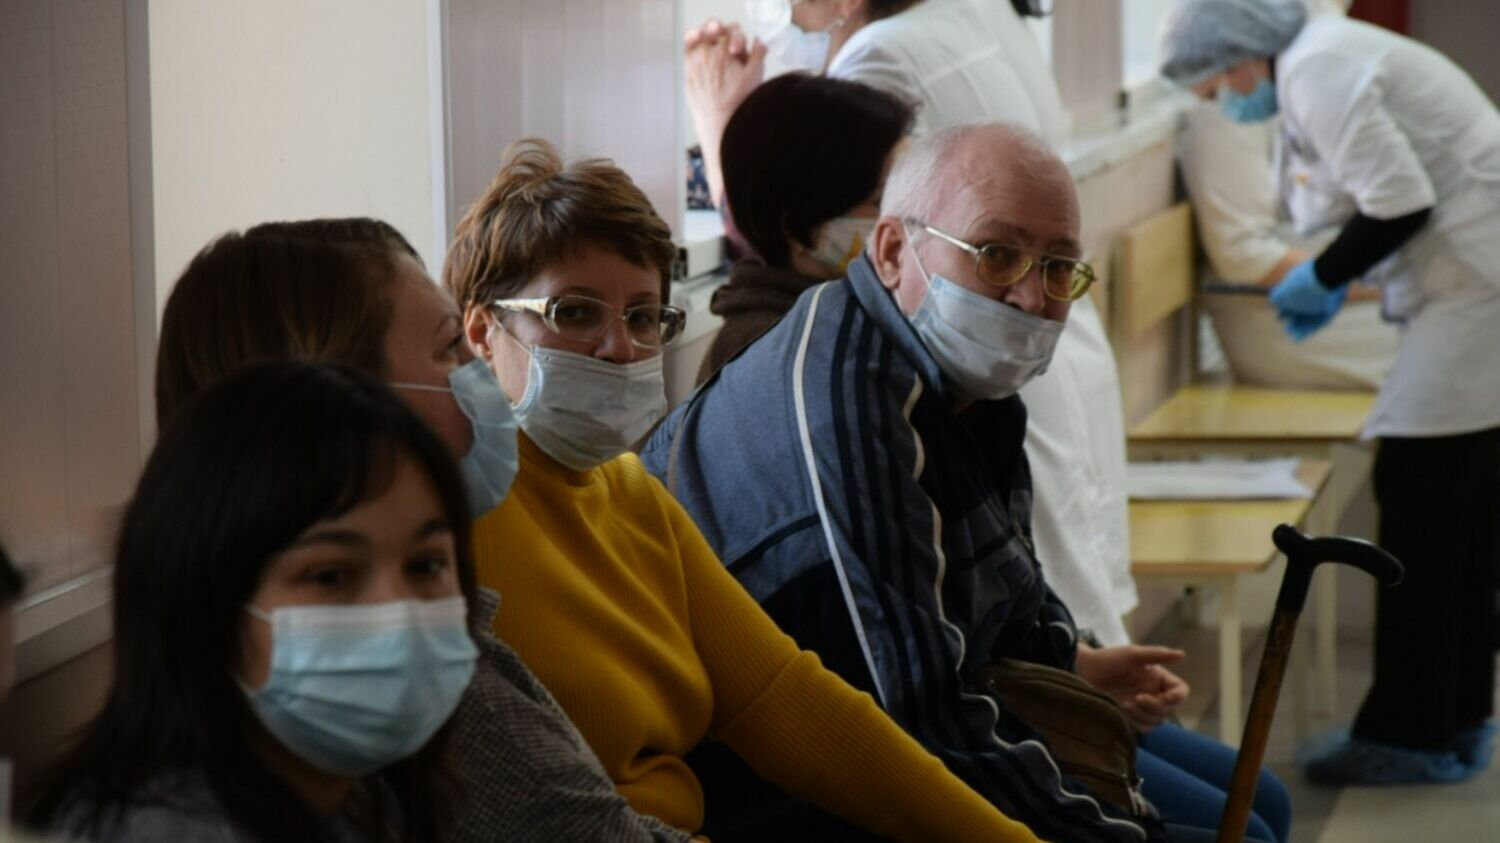 Хорошая защита от свиного гриппа -  ношение масок в общественных местах